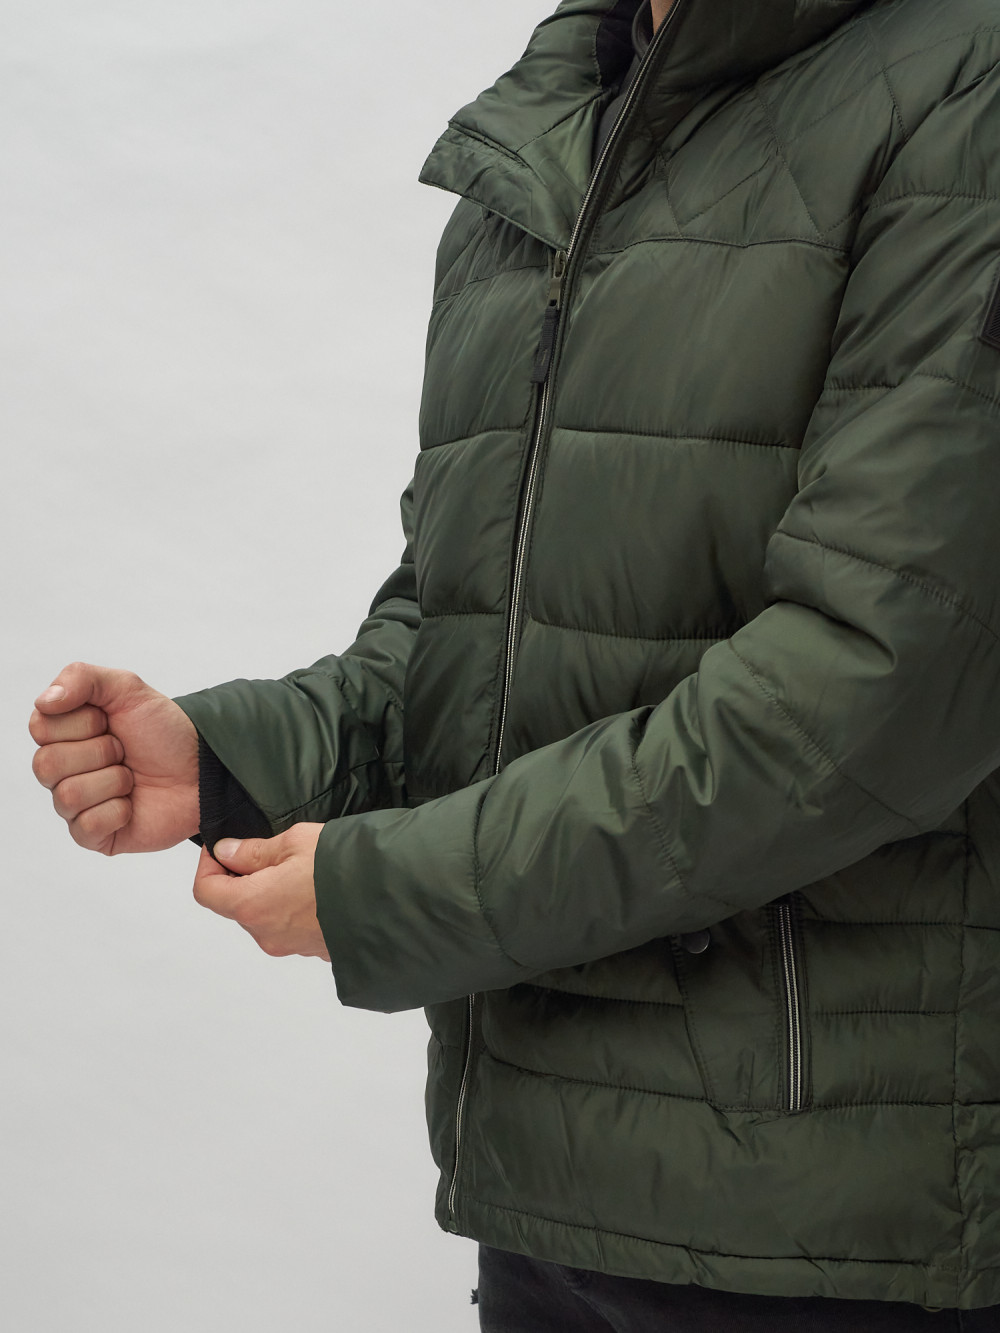 Купить куртку мужскую спортивную весеннюю оптом от производителя недорого в Москве 62179Kh 1